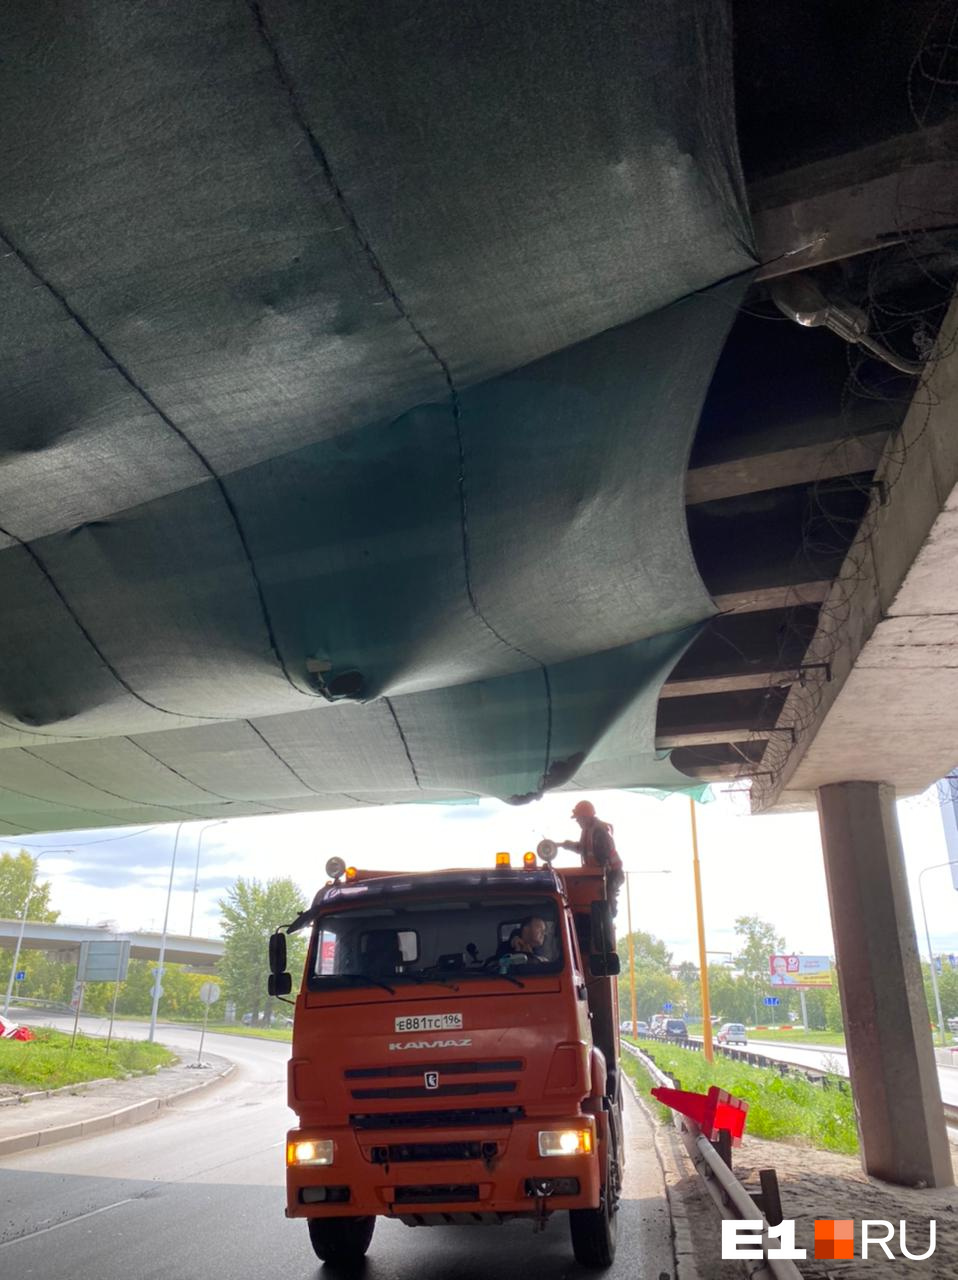 Булыжники выпали из разорванной сетки, натянутой под ремонтируемым мостом